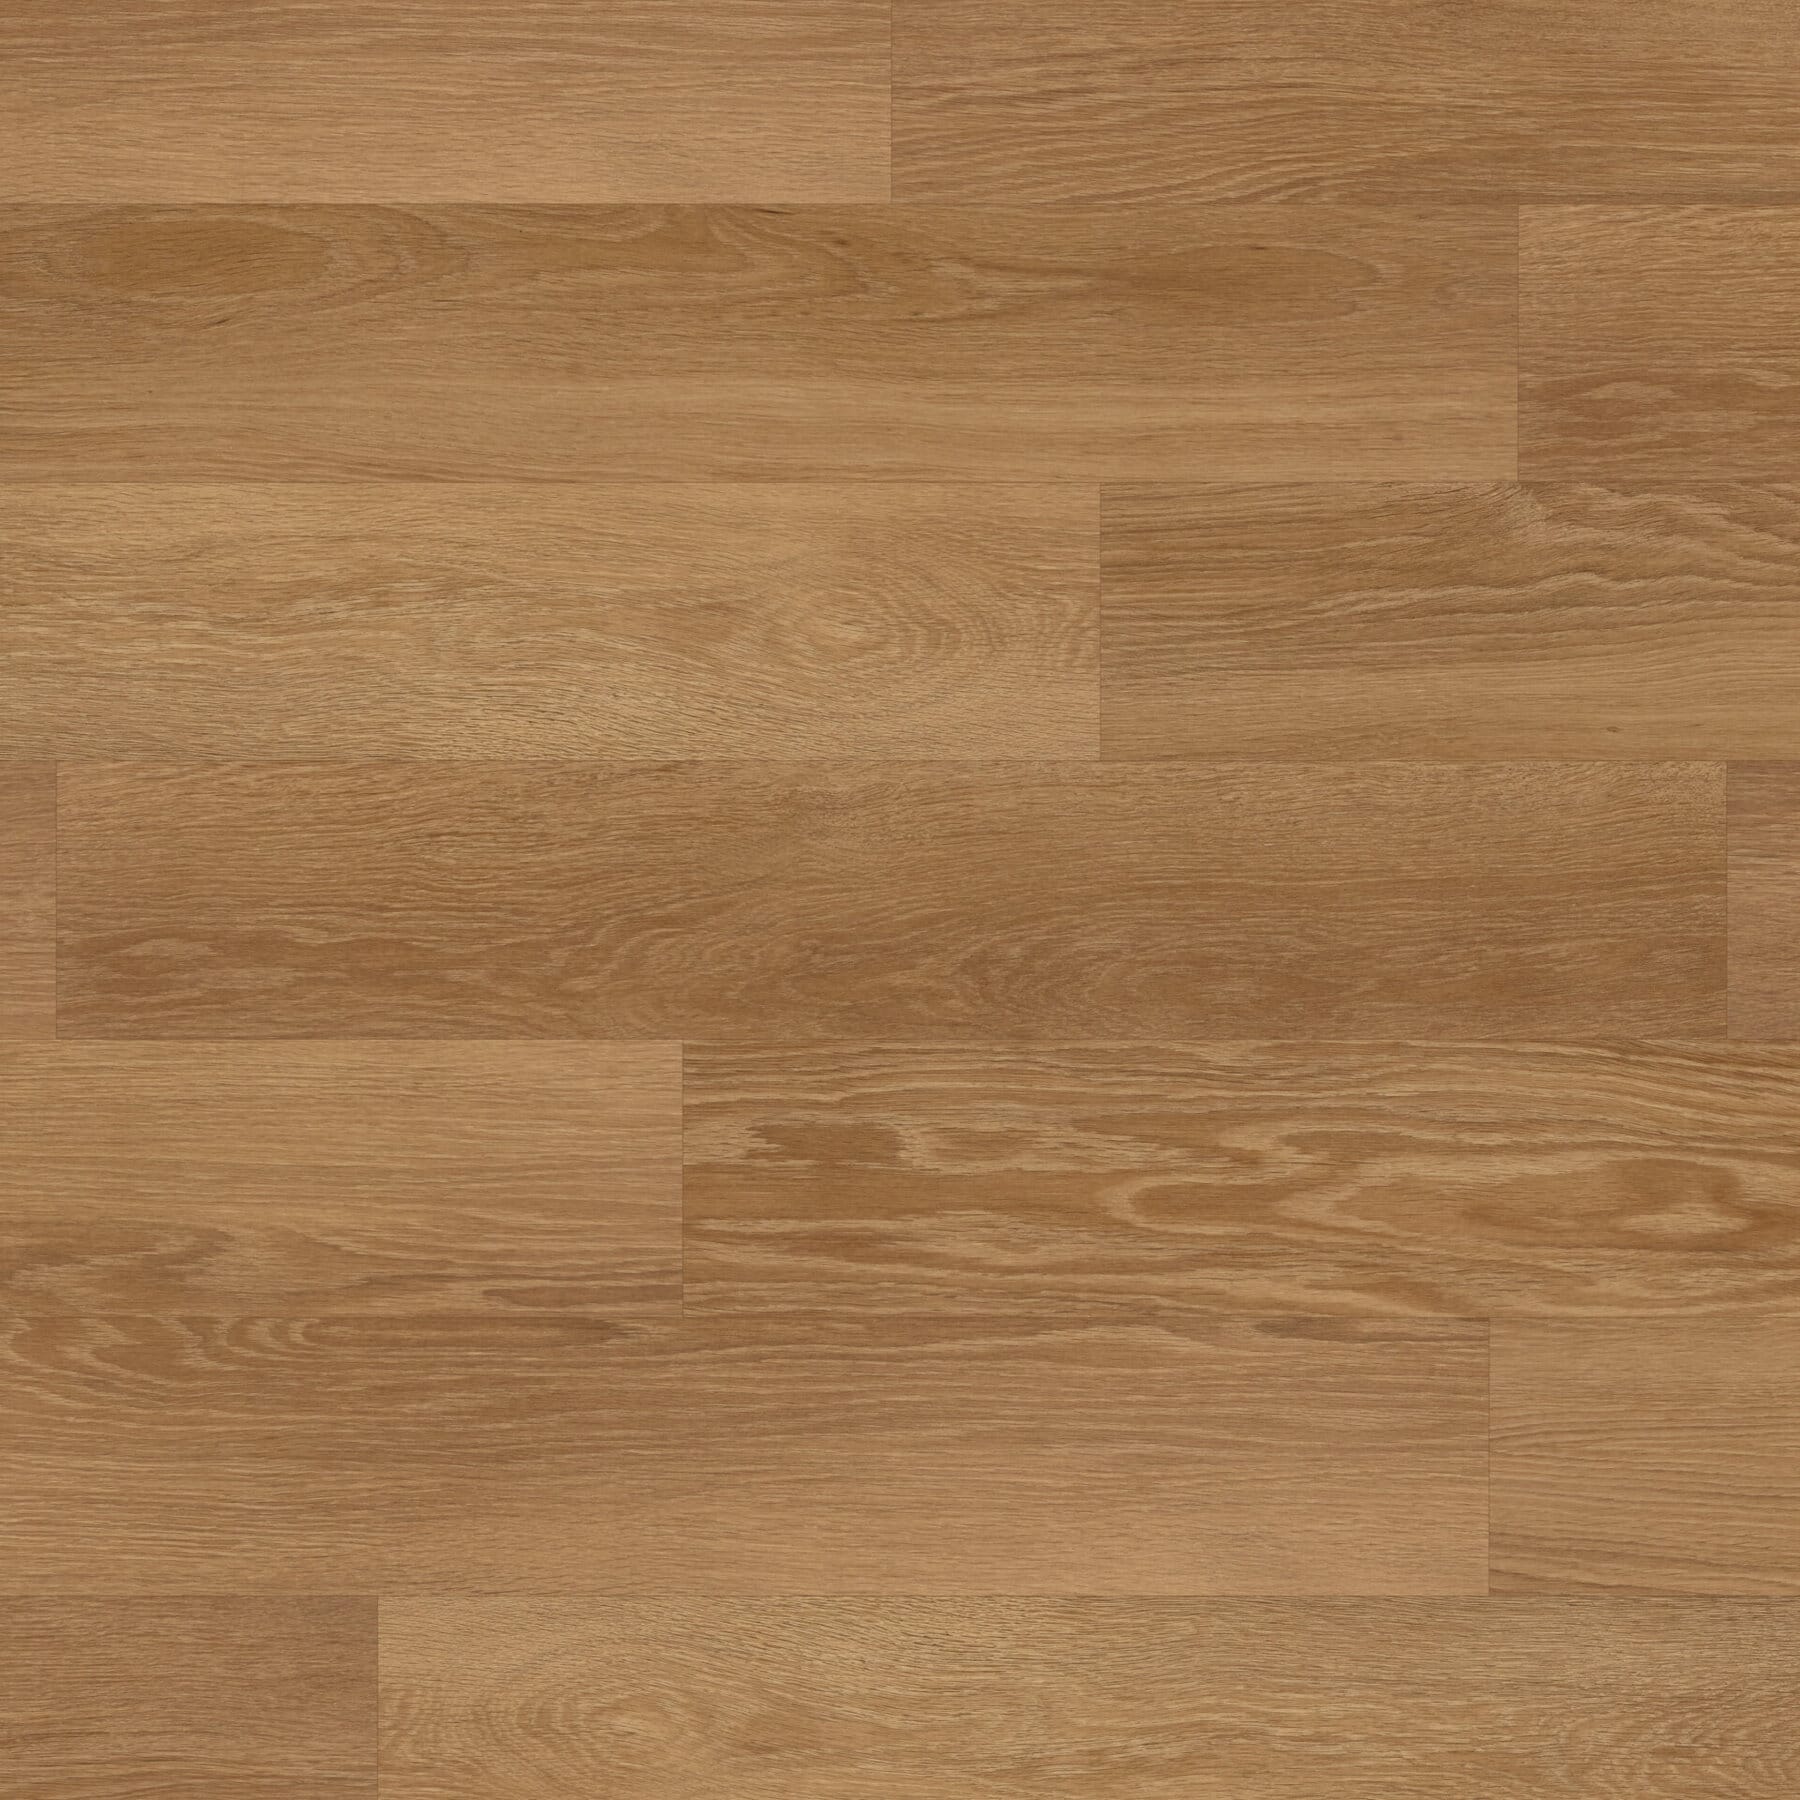 View of KP155 Honey Limed Oak luxury vinyl tile by Karndean